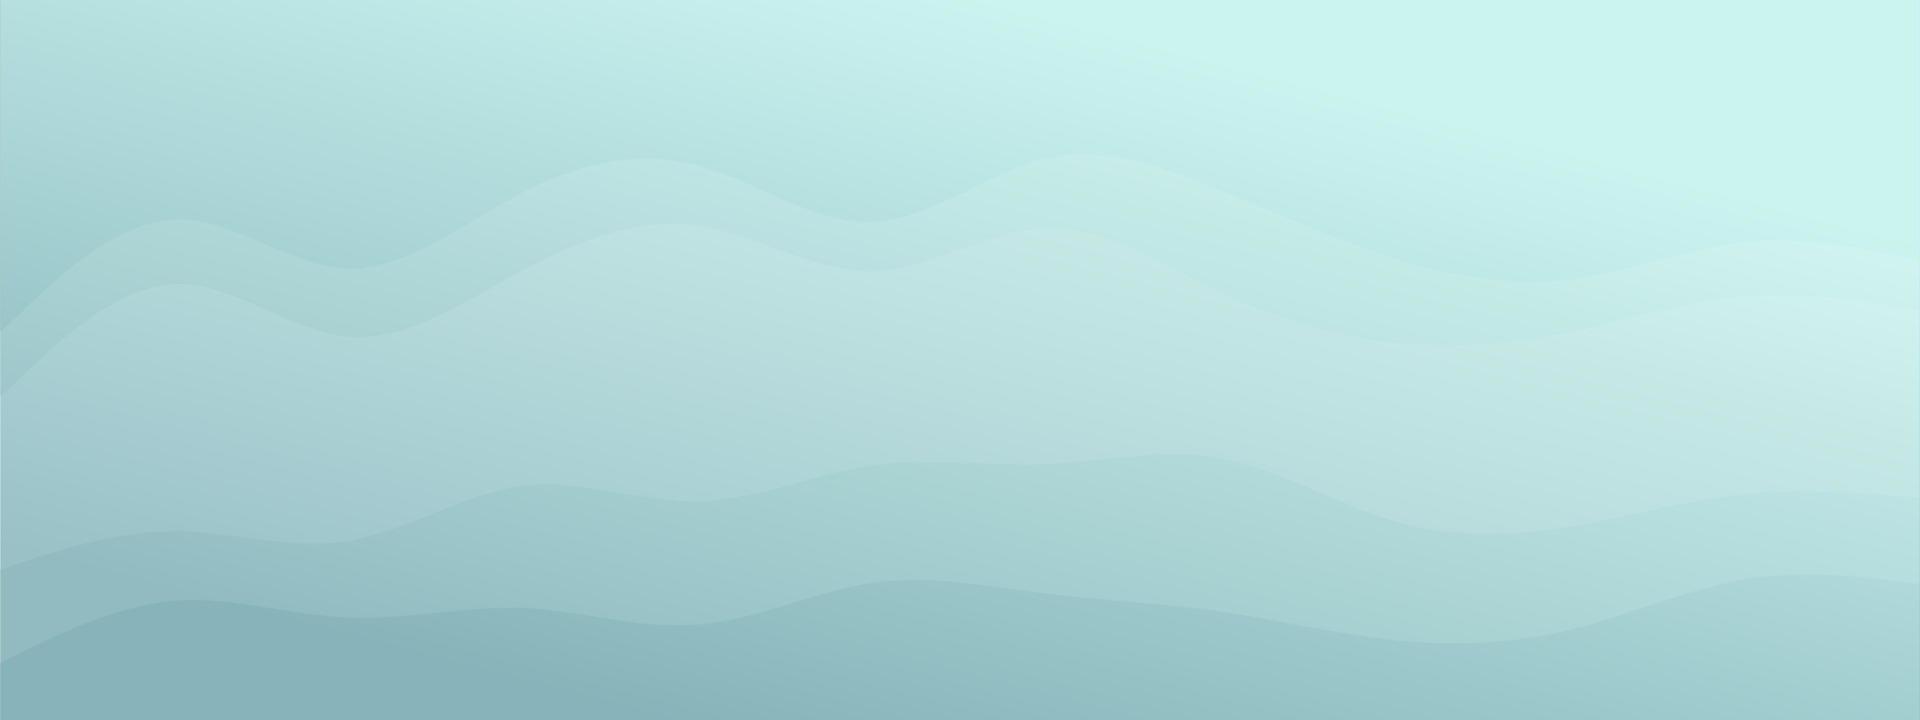 forme fluide onda astratta sfondo sfumato moderno minimalista combinato colori chiari pastello. modello alla moda per il sito Web della pagina di destinazione del biglietto da visita della brochure. illustrazione vettoriale eps 10